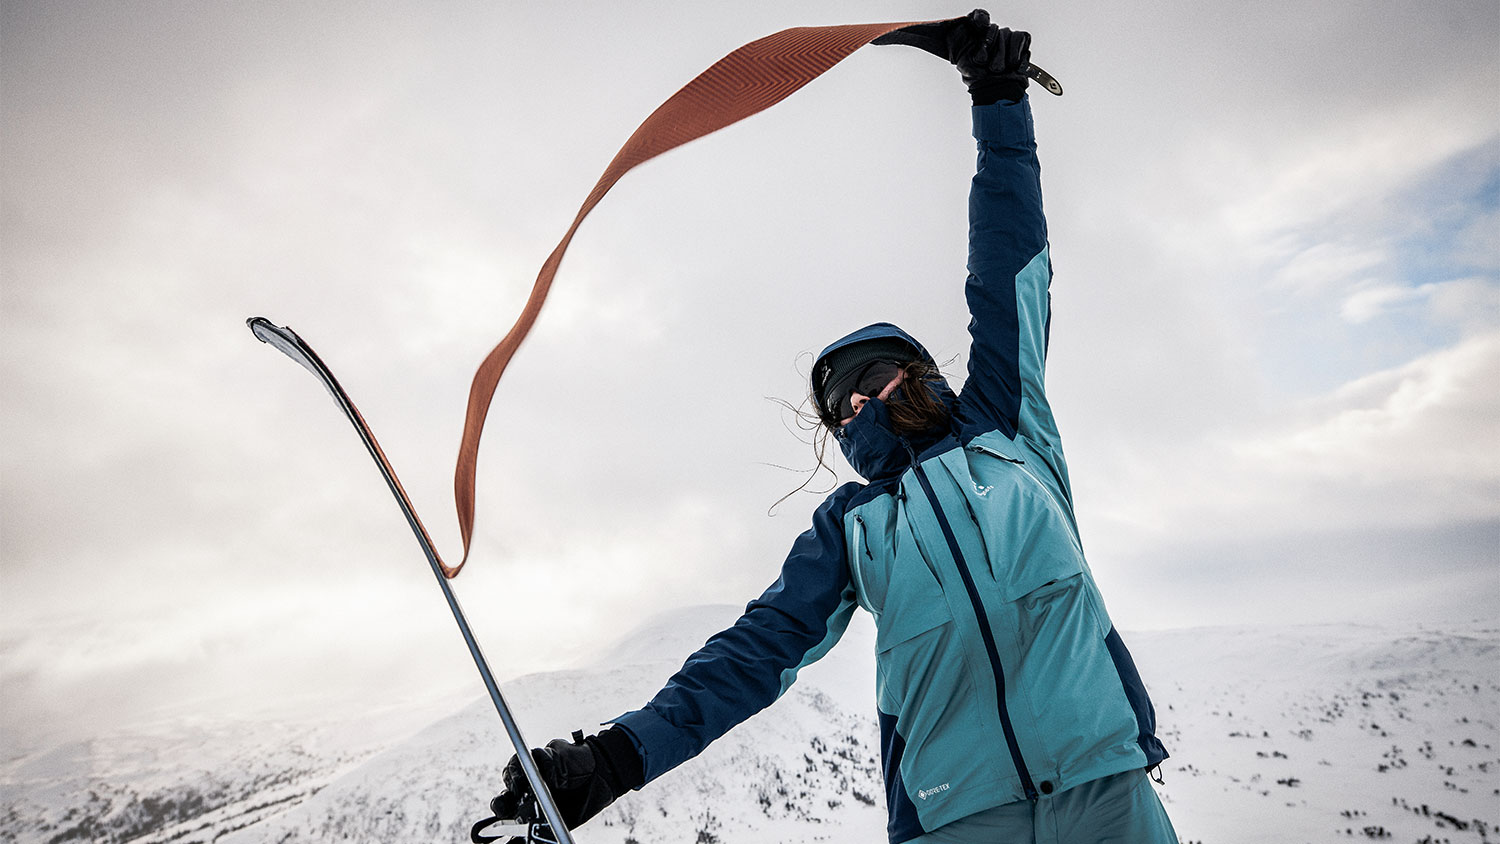 Haglöfs Vassi GTX collectie optimaal voor freeride ski touring